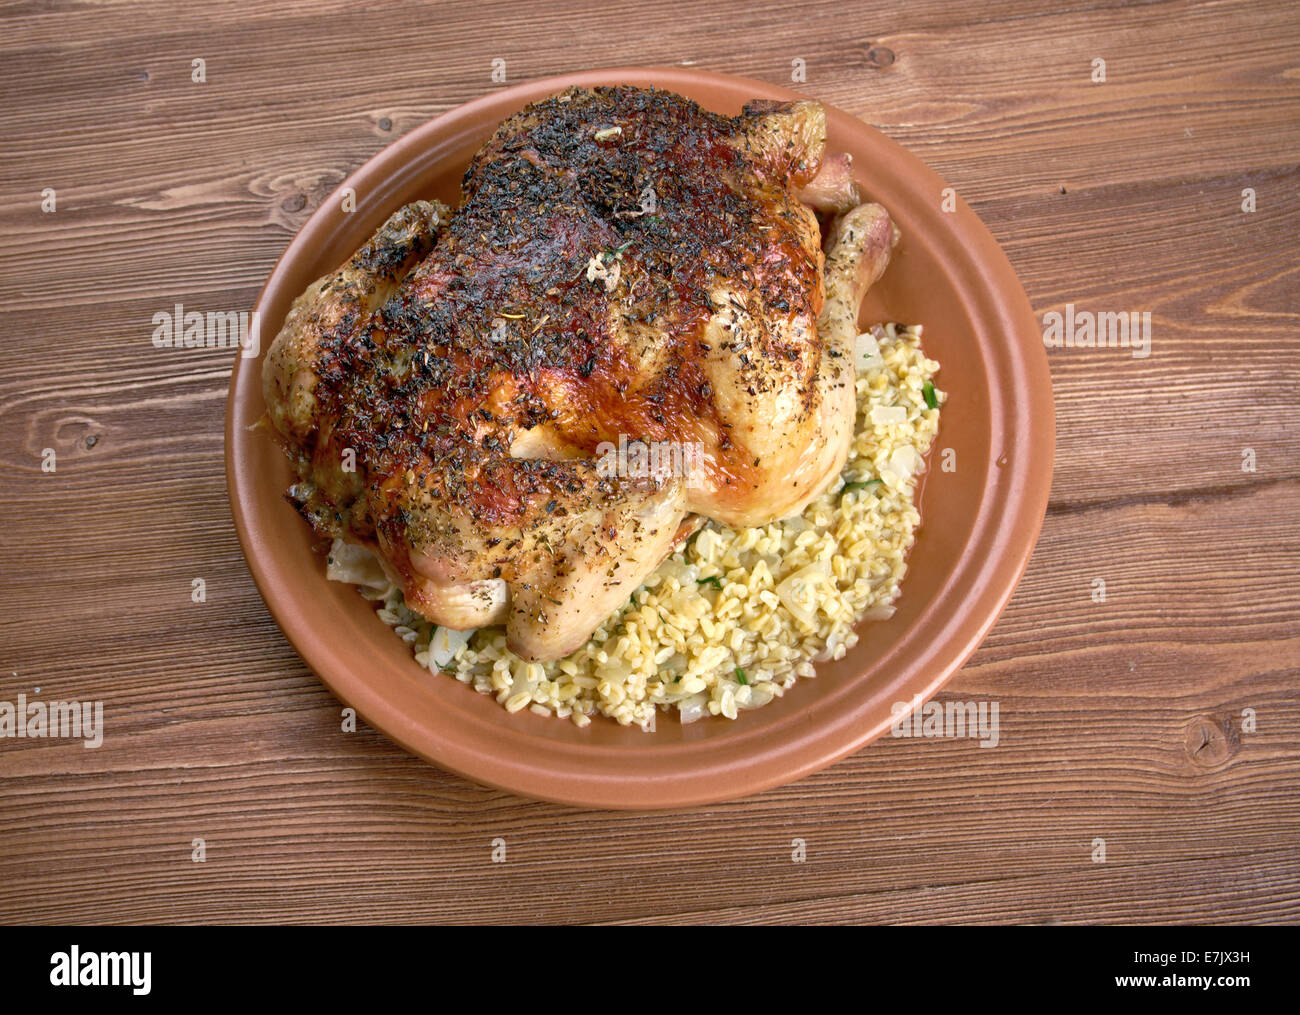 hamam mahshi - Egyptian braised squab stuffed with cracked wheat Stock Photo